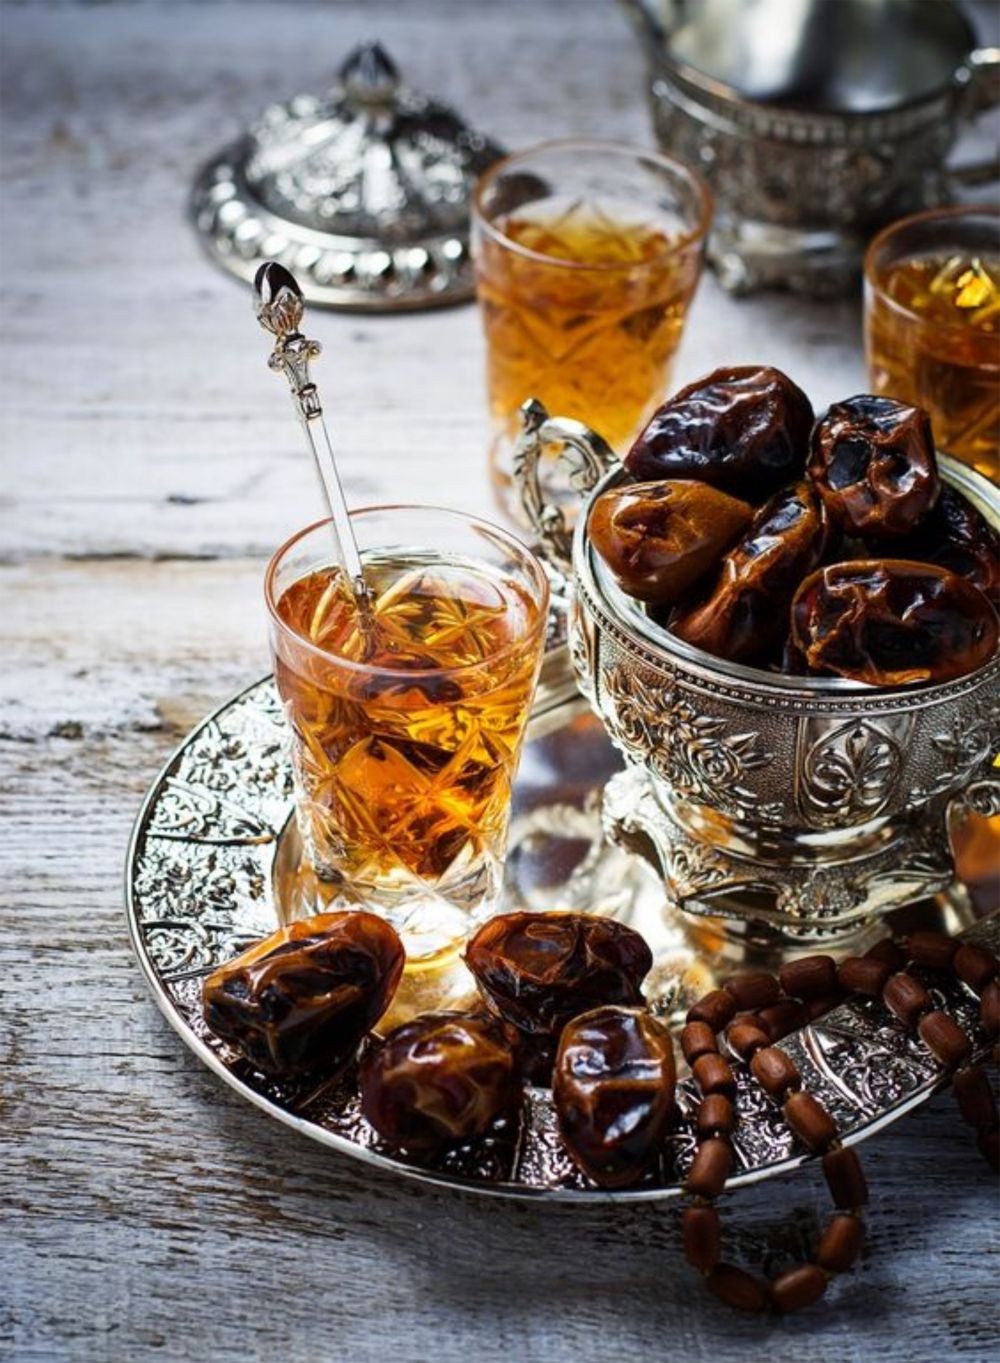 7 Rekomendasi Buka Bersama Ramadan di Hotel Semarang, All You Can Eat